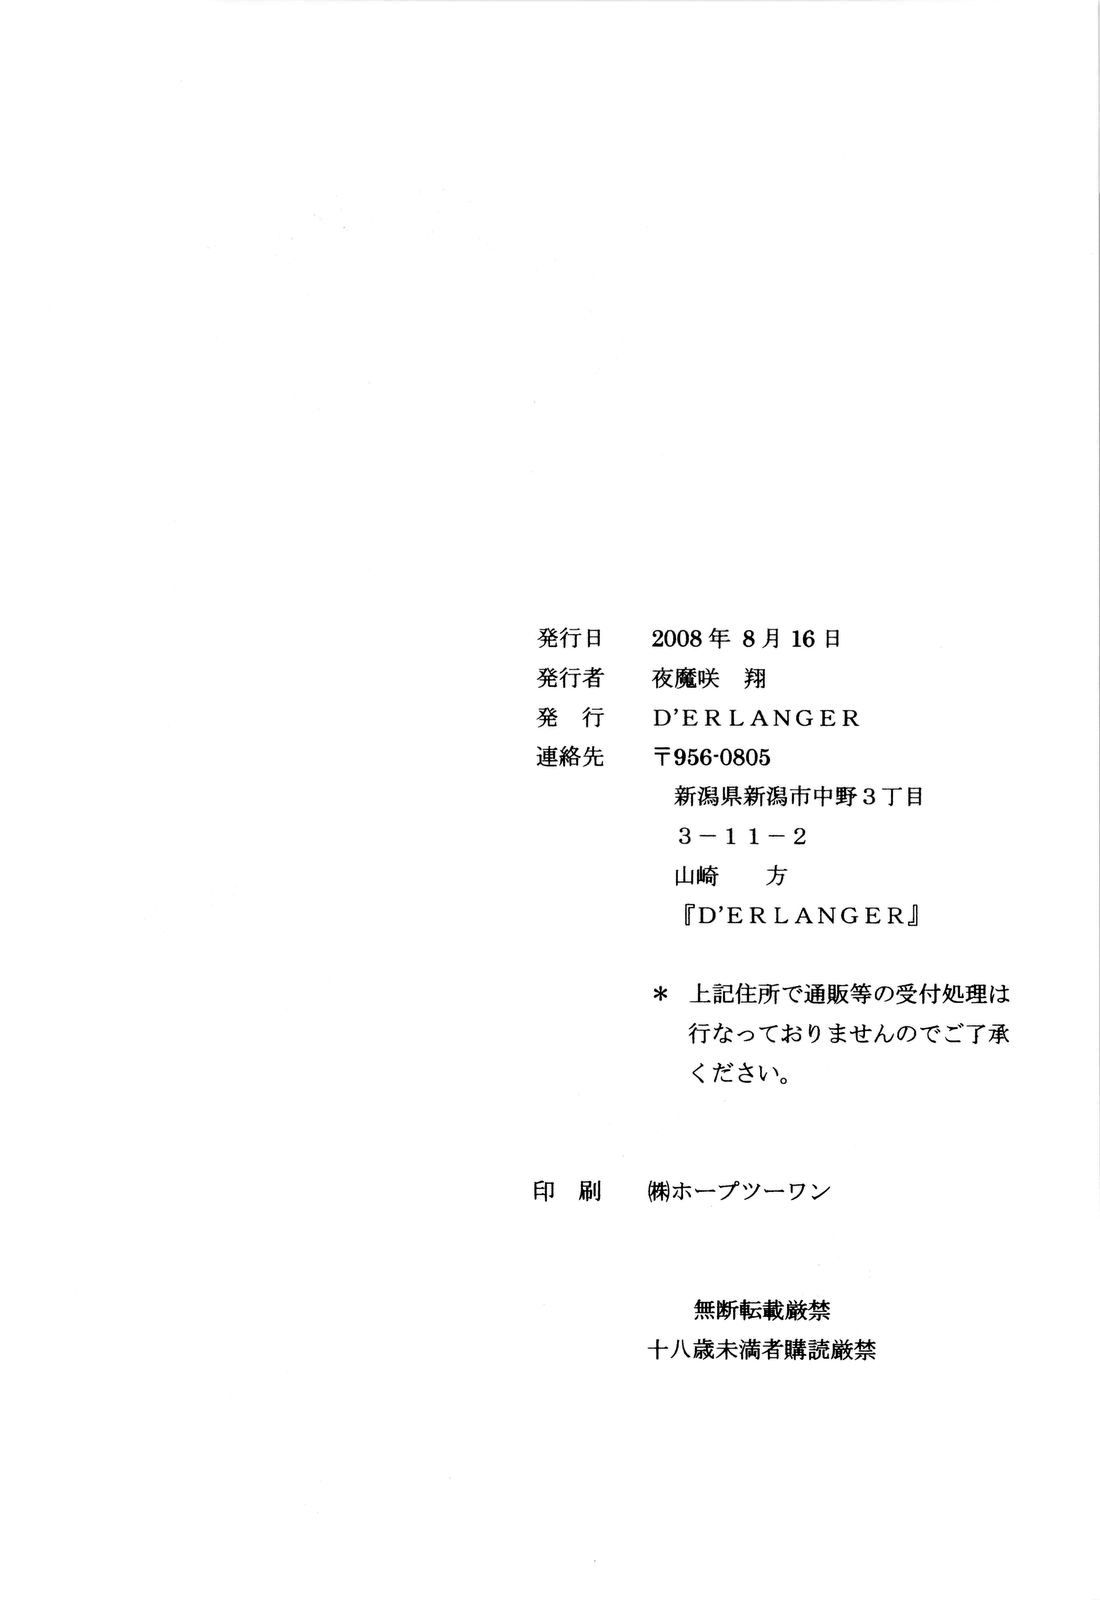 (C74) [D'ERLANGER (夜魔咲翔)] Revelation H Volume: 3 (涼宮ハルヒの憂鬱)